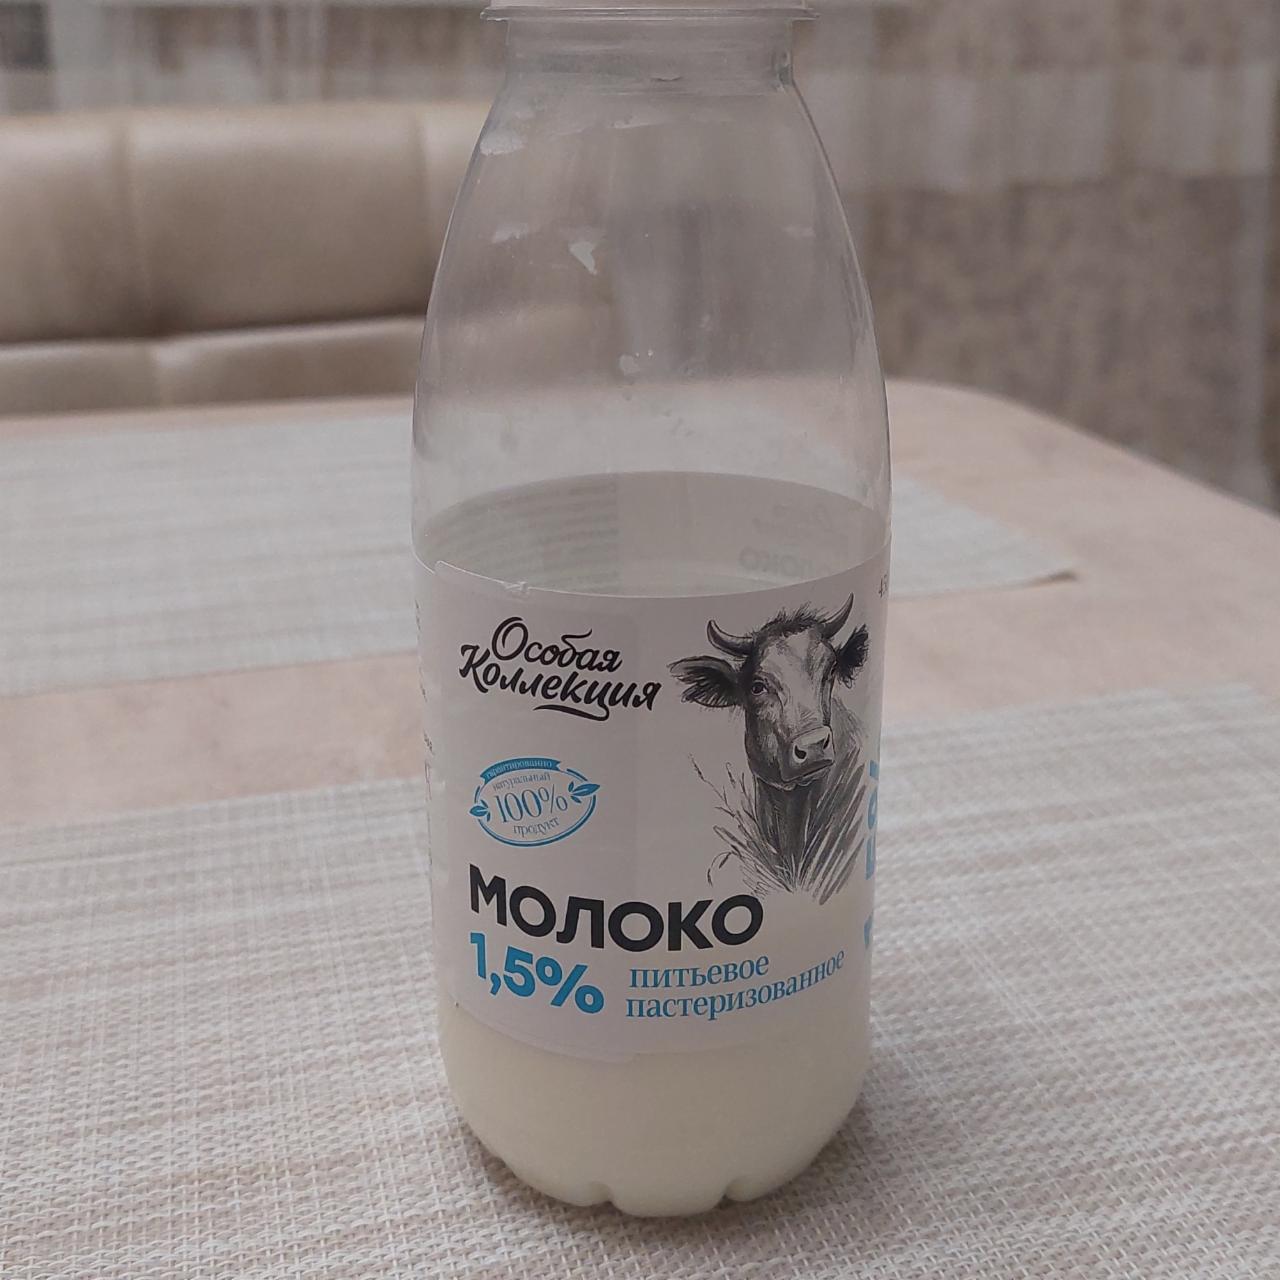 Фото - Молоко 1.5% Особая коллекция